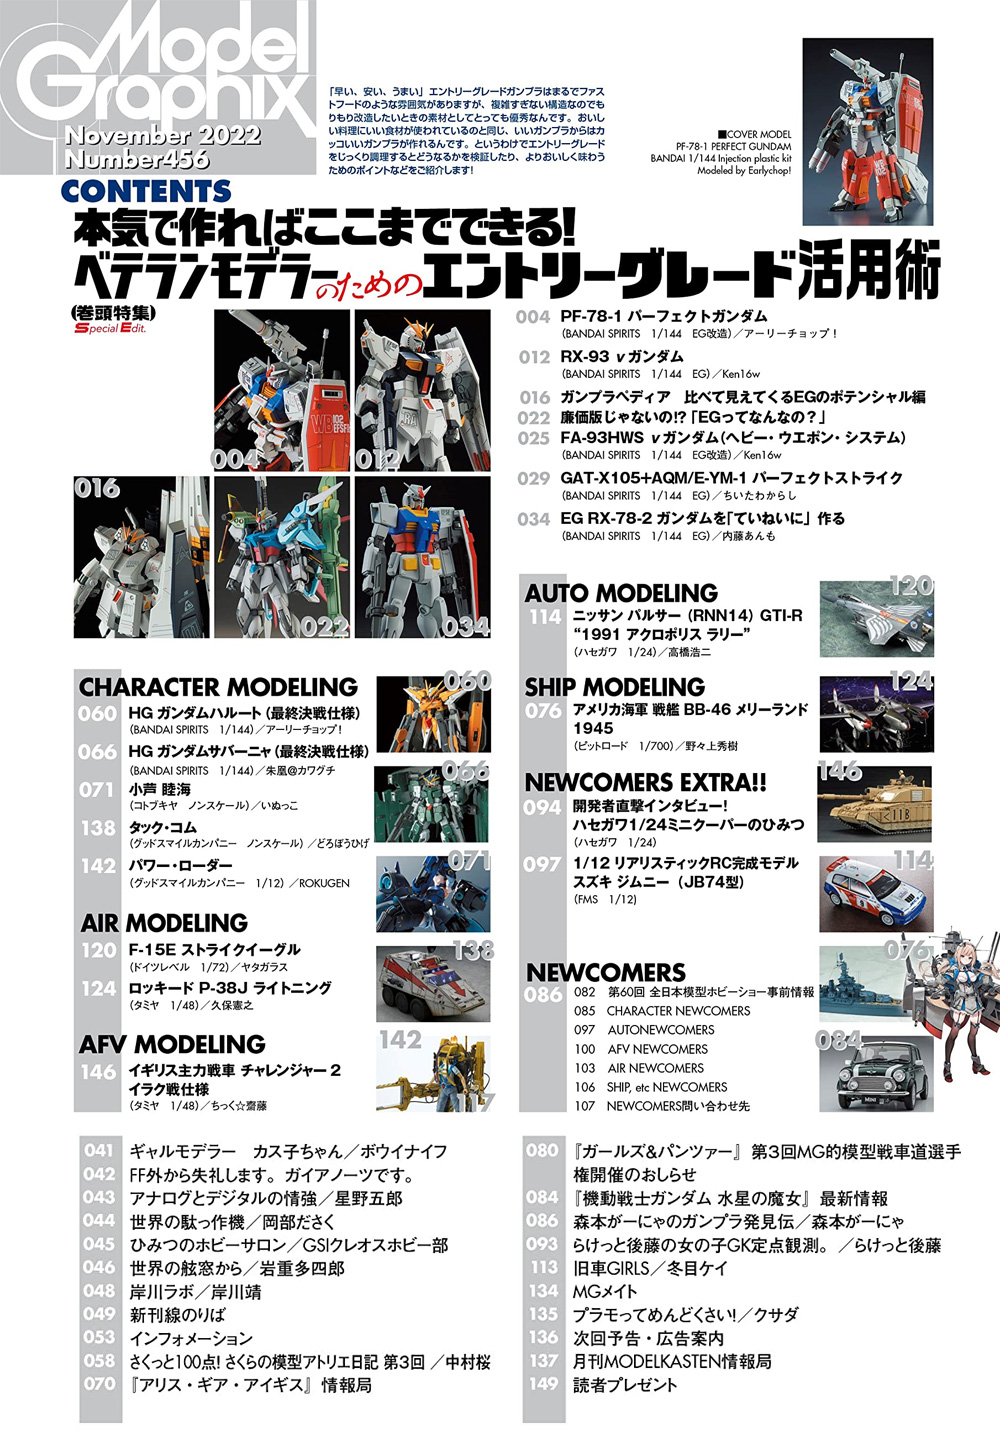 モデルグラフィックス 2022年11月号 No.456 雑誌 (大日本絵画 月刊 モデルグラフィックス No.456) 商品画像_1